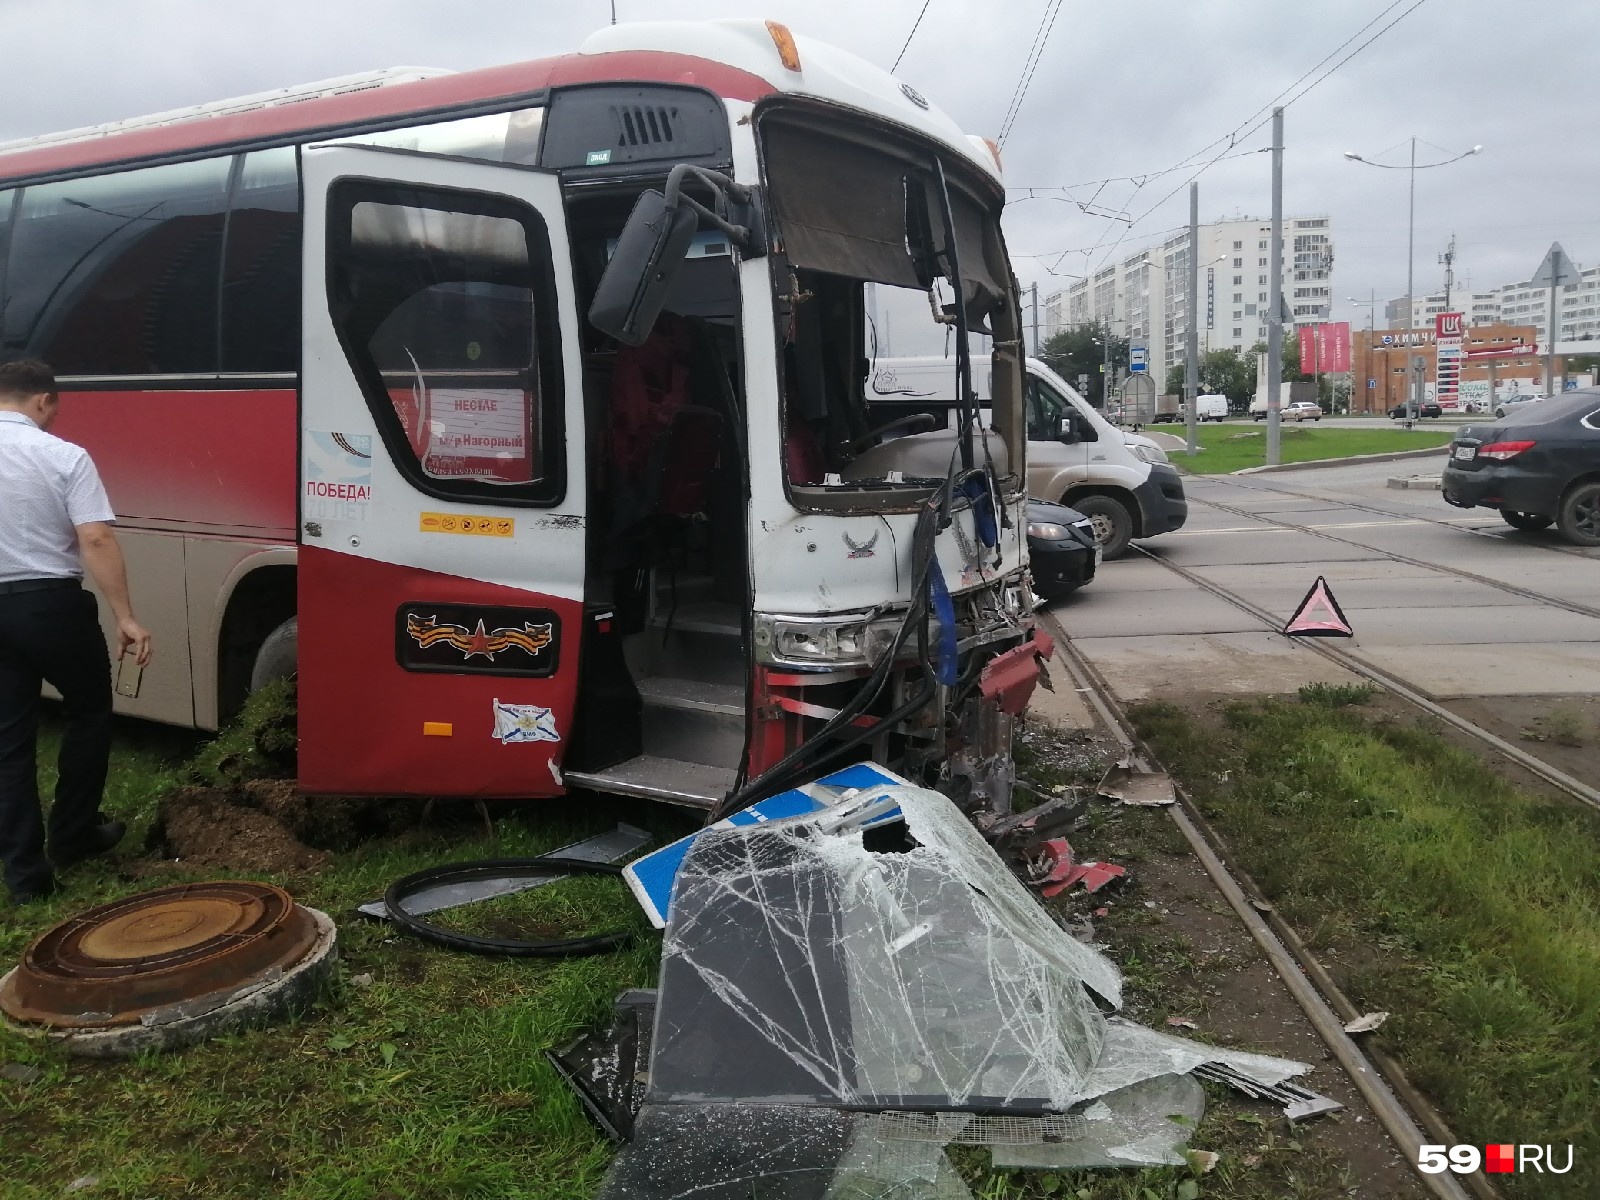 У автобуса тоже серьезные повреждения, но в нем никто не пострадал